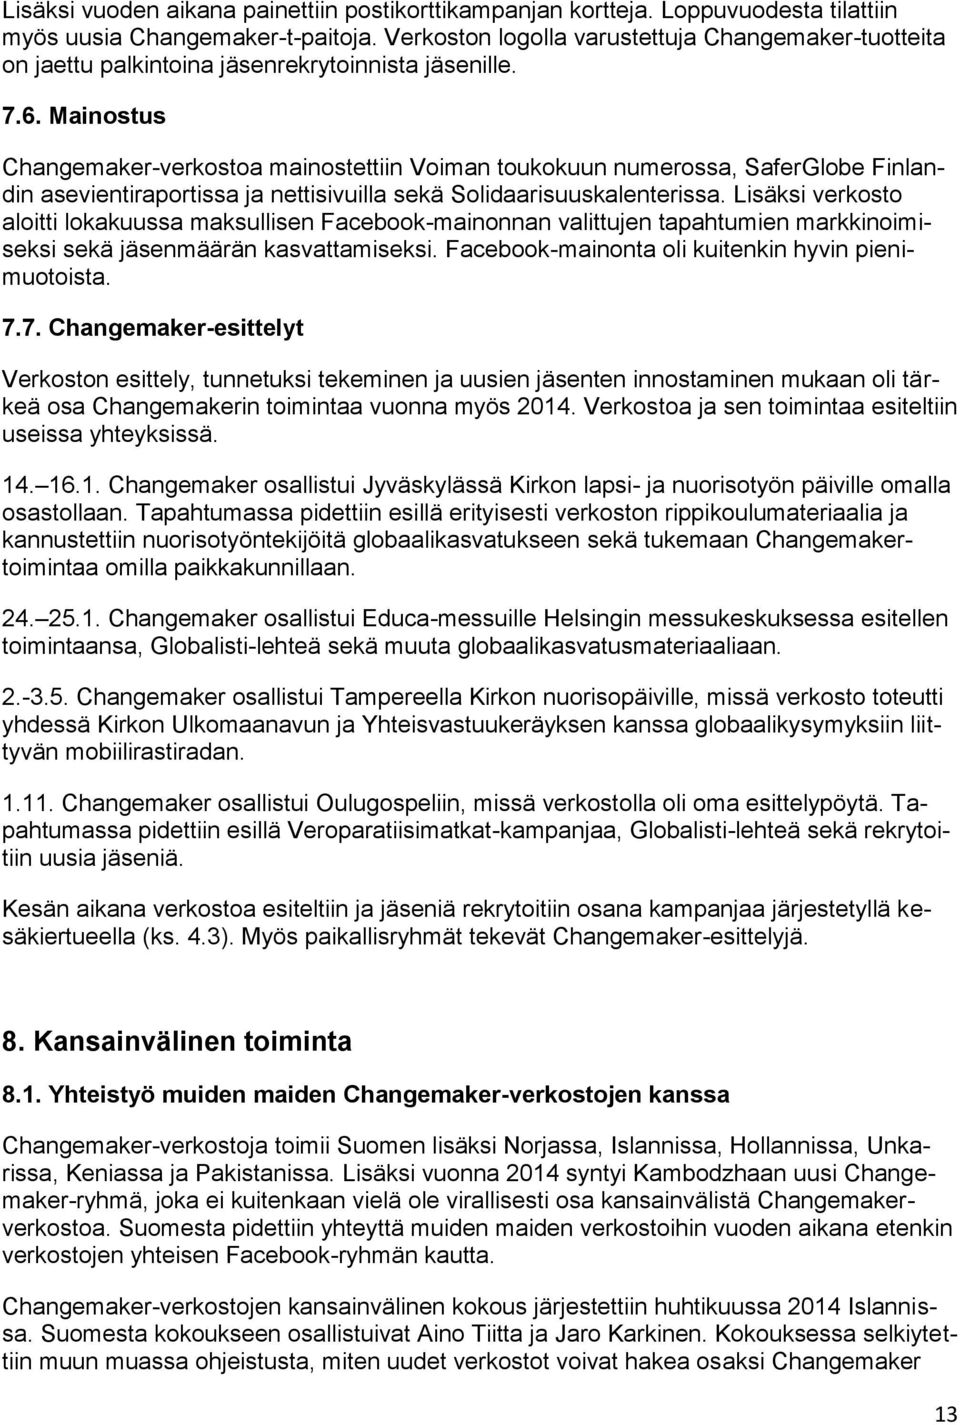 Mainostus Changemaker-verkostoa mainostettiin Voiman toukokuun numerossa, SaferGlobe Finlandin asevientiraportissa ja nettisivuilla sekä Solidaarisuuskalenterissa.